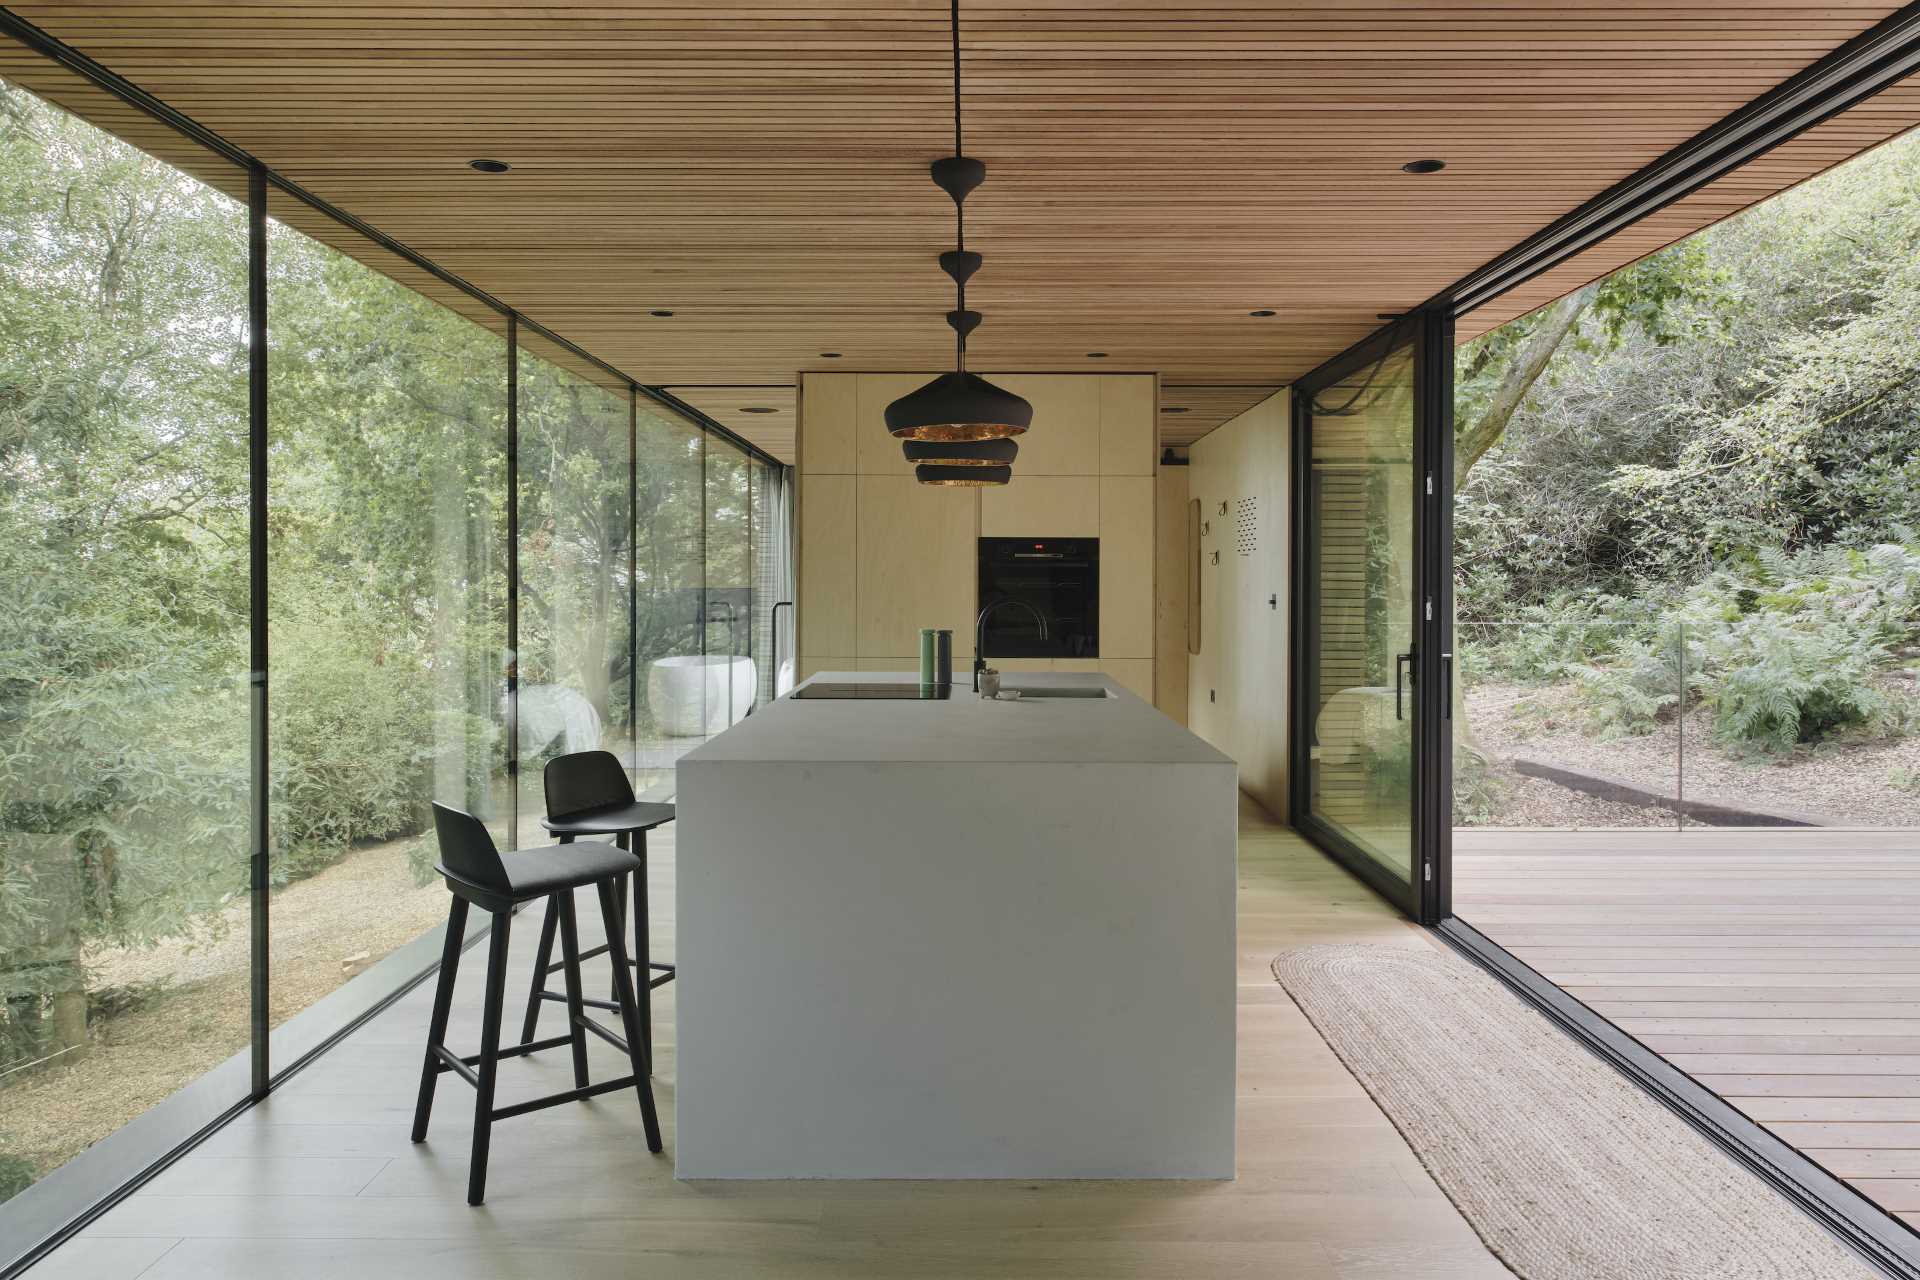 یک آشپزخانه مدرن شامل کابینت های تخته سه لا توس و نور آویز مشکی است.